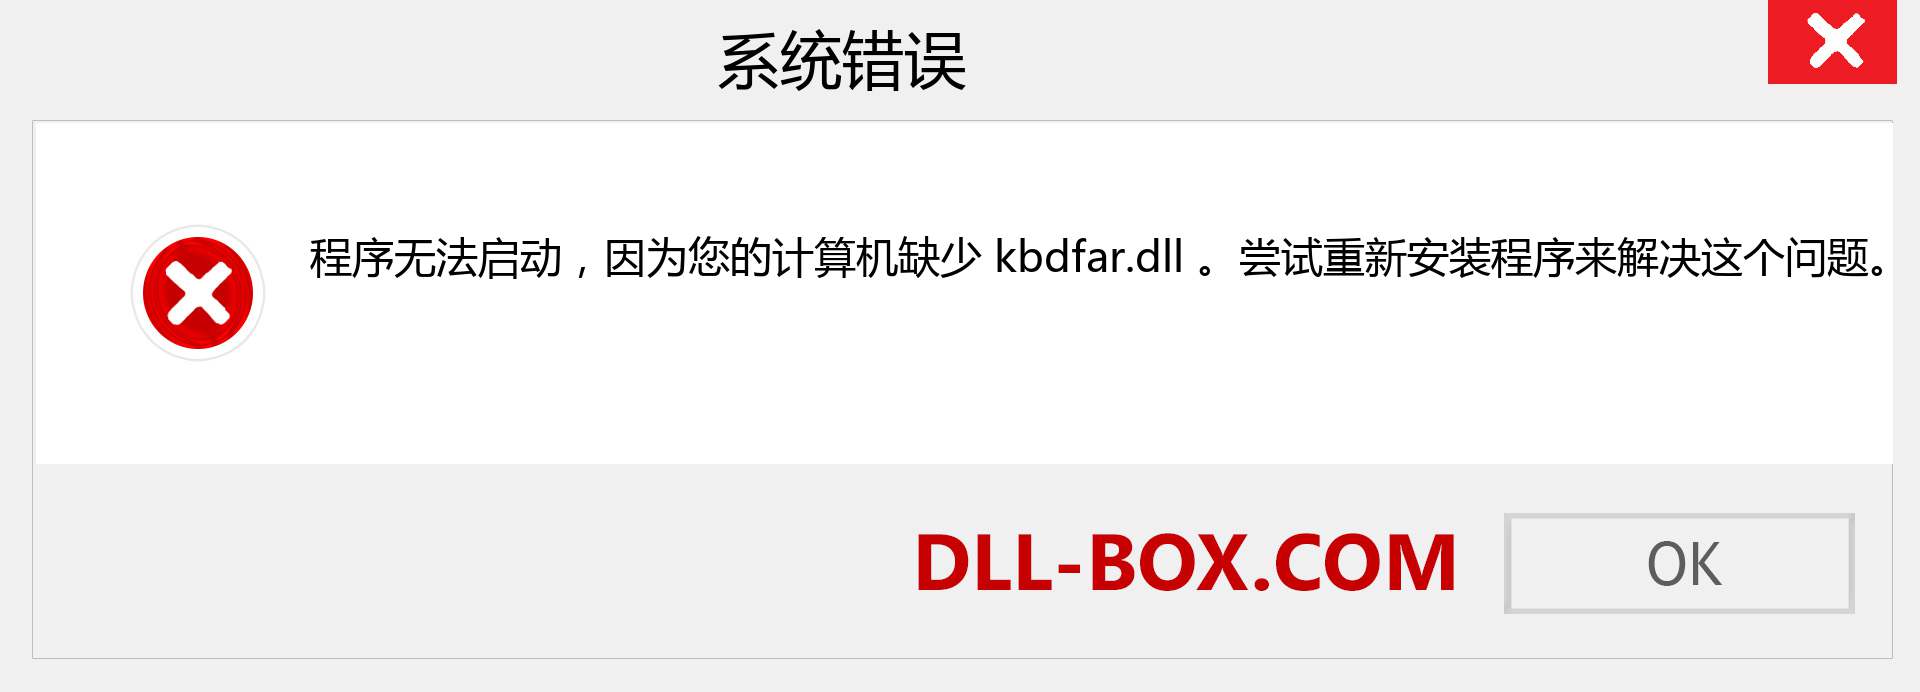 kbdfar.dll 文件丢失？。 适用于 Windows 7、8、10 的下载 - 修复 Windows、照片、图像上的 kbdfar dll 丢失错误